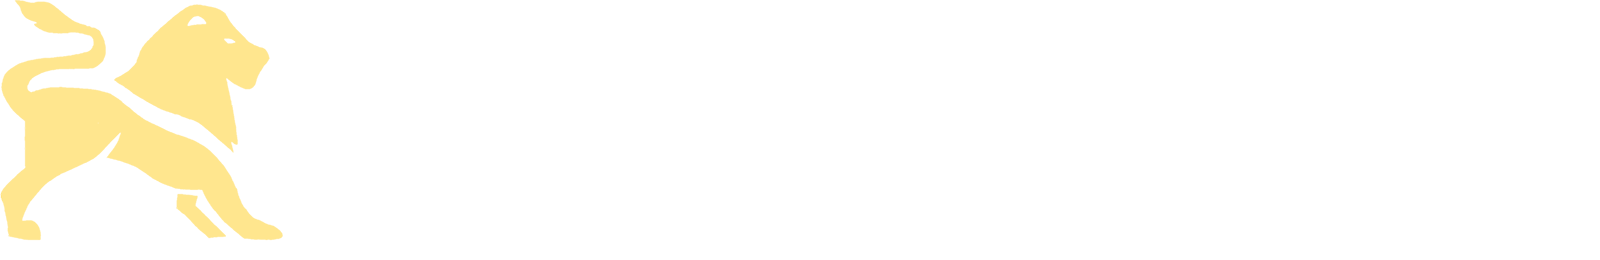 Homesley Wealth Management